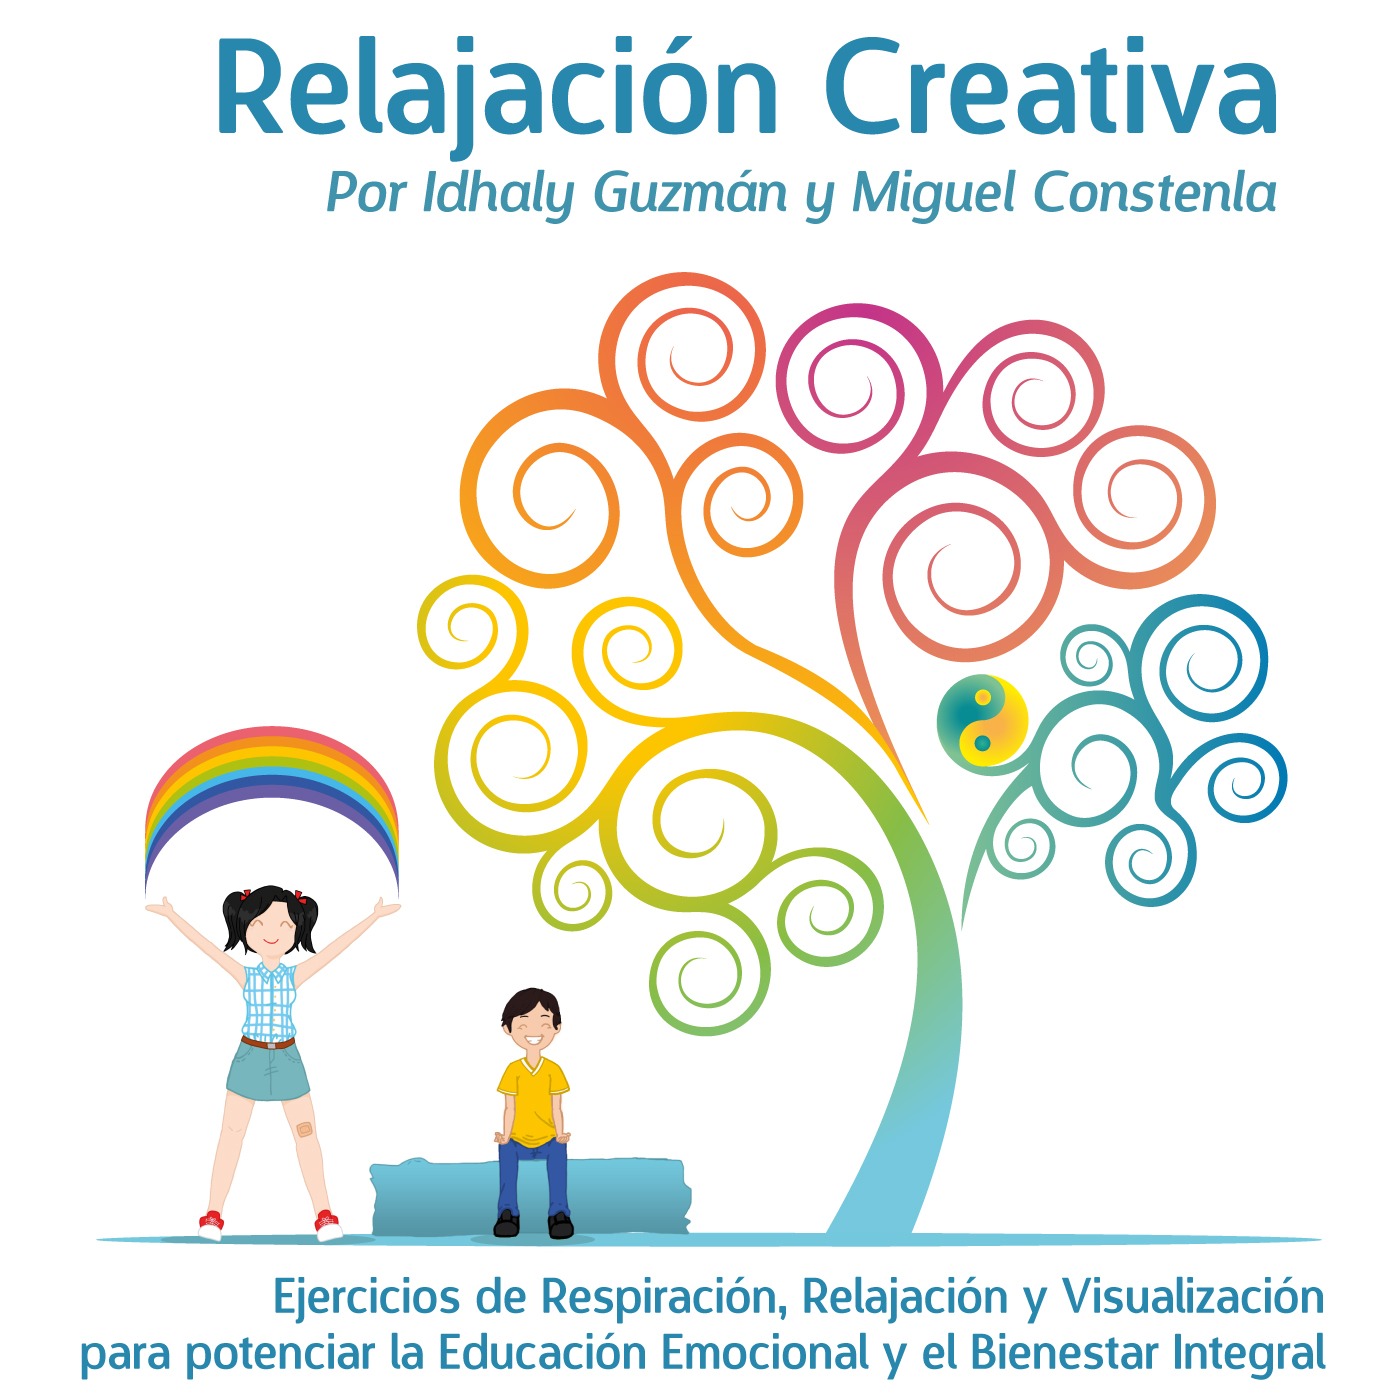 CD Relajacion Creativa Idhaly Guzman Miguel Constenla